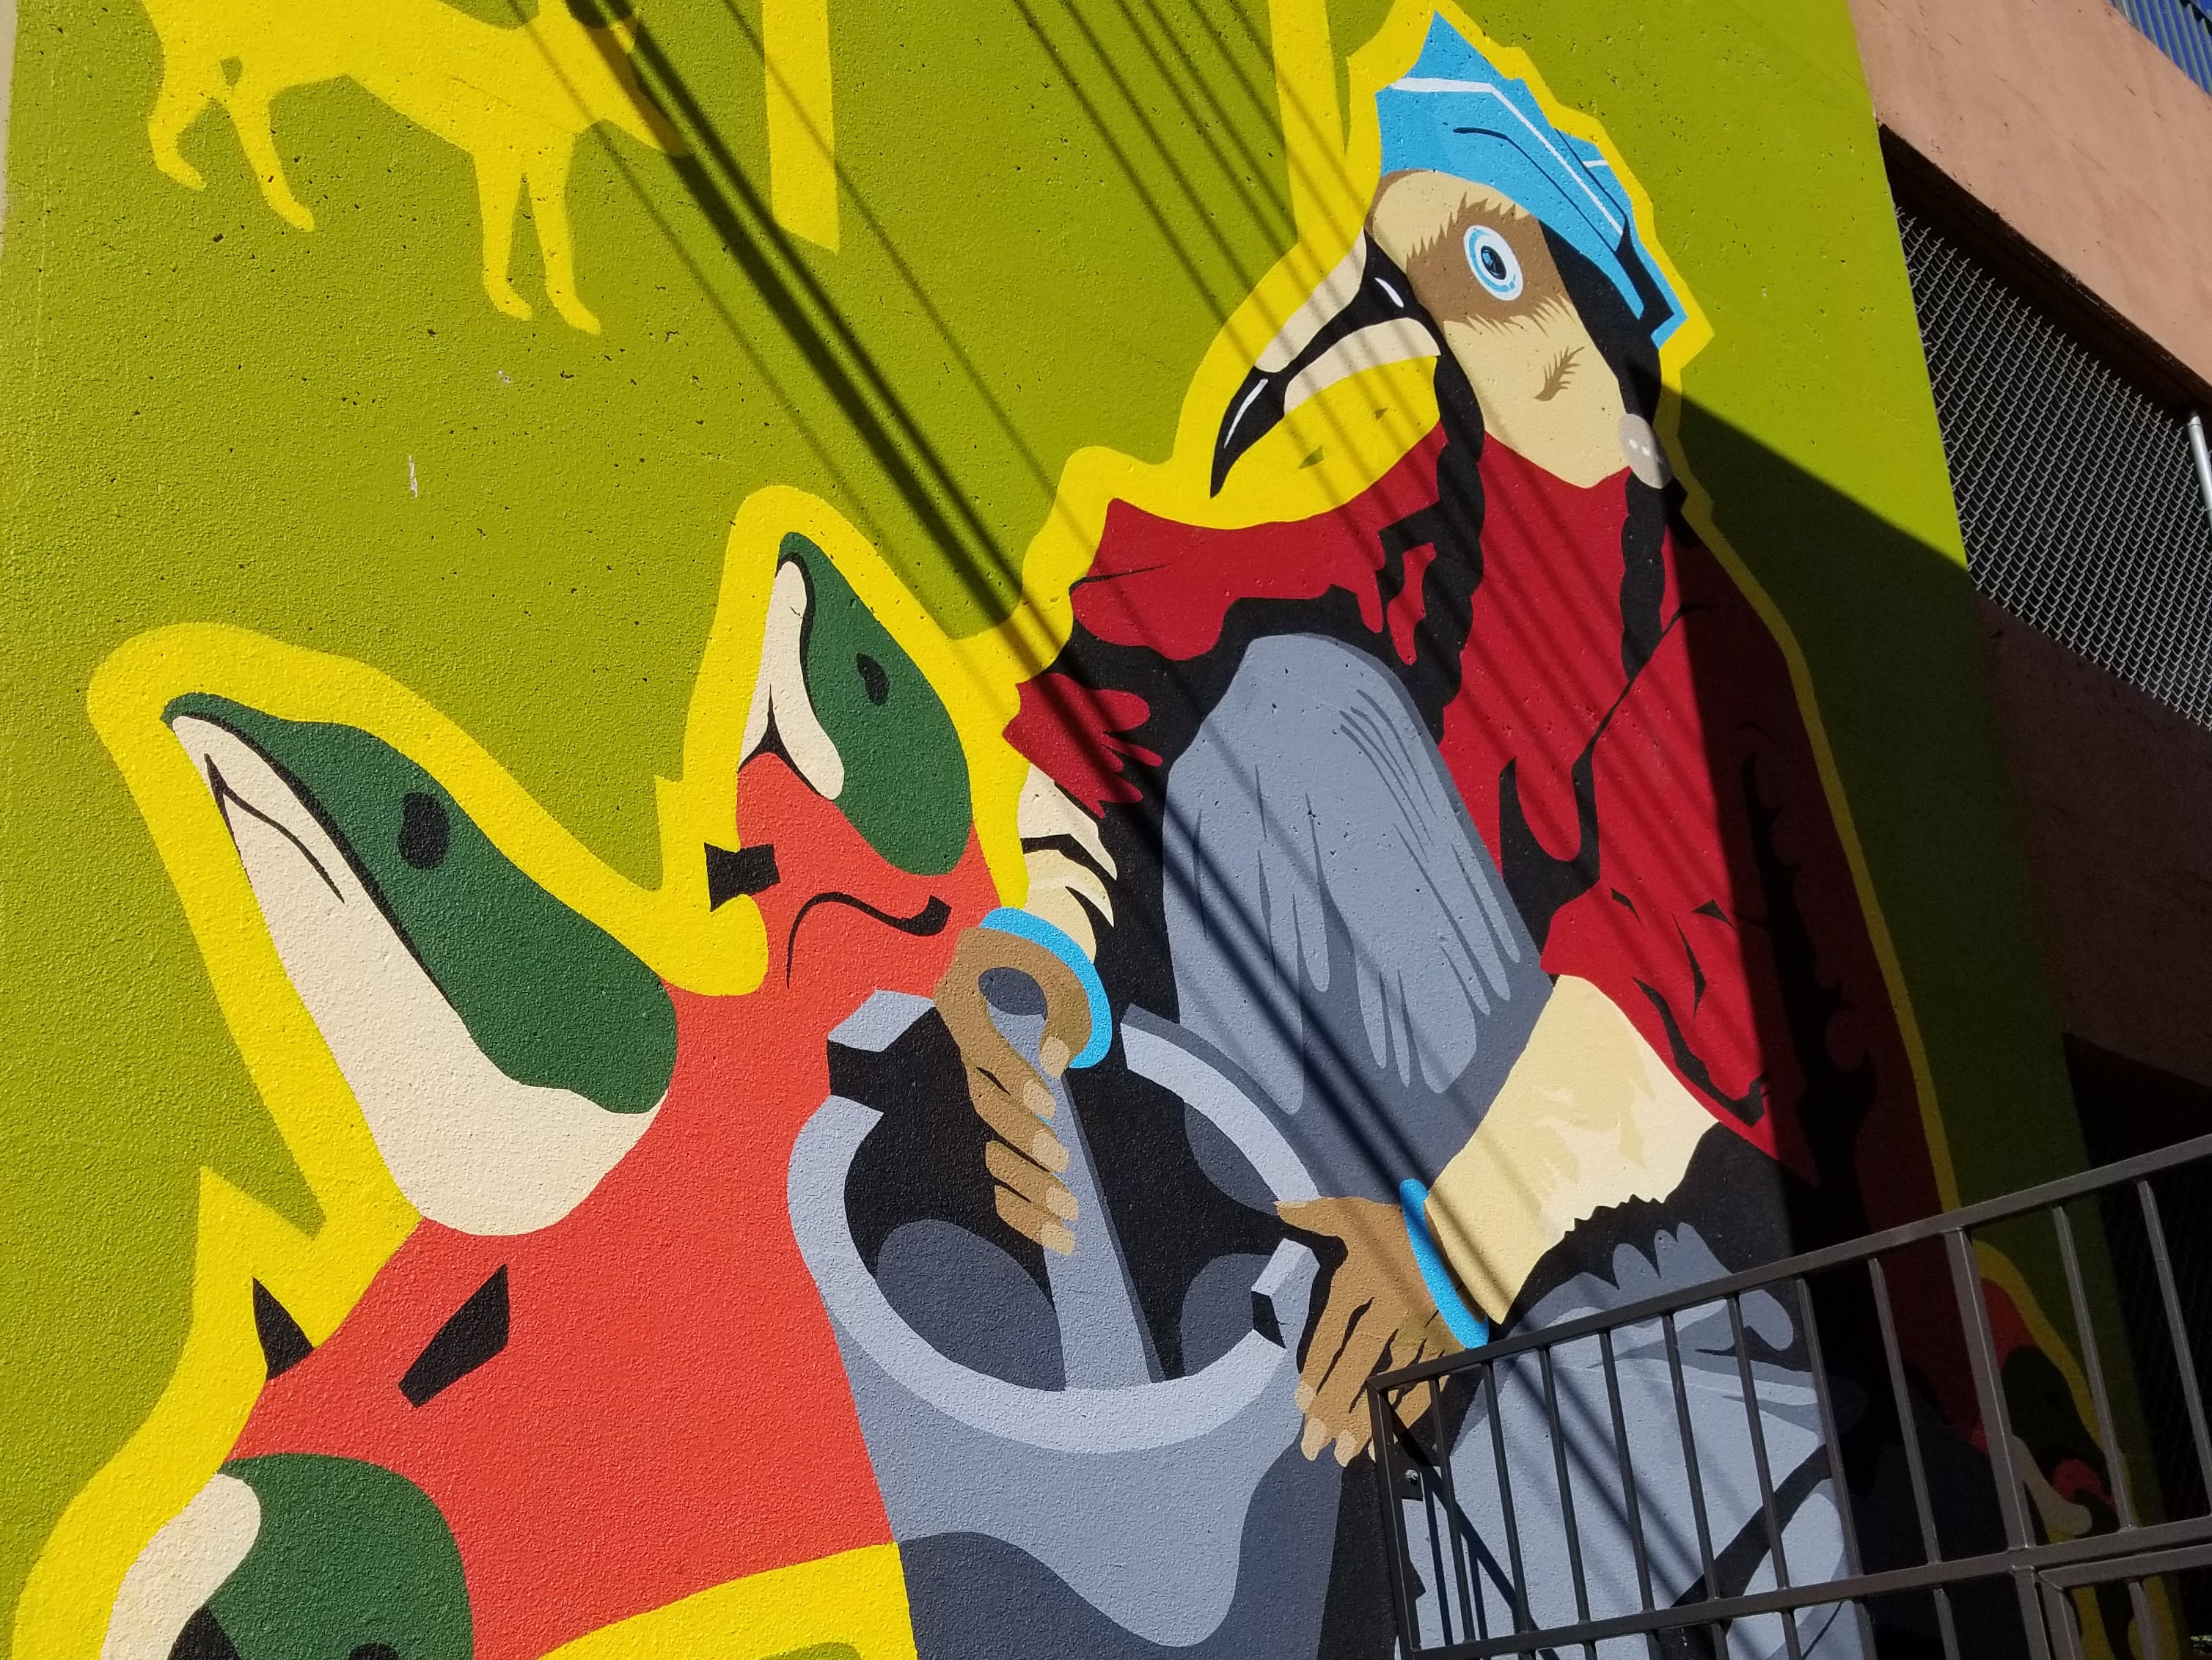 Nelson International Mural Festival goes online